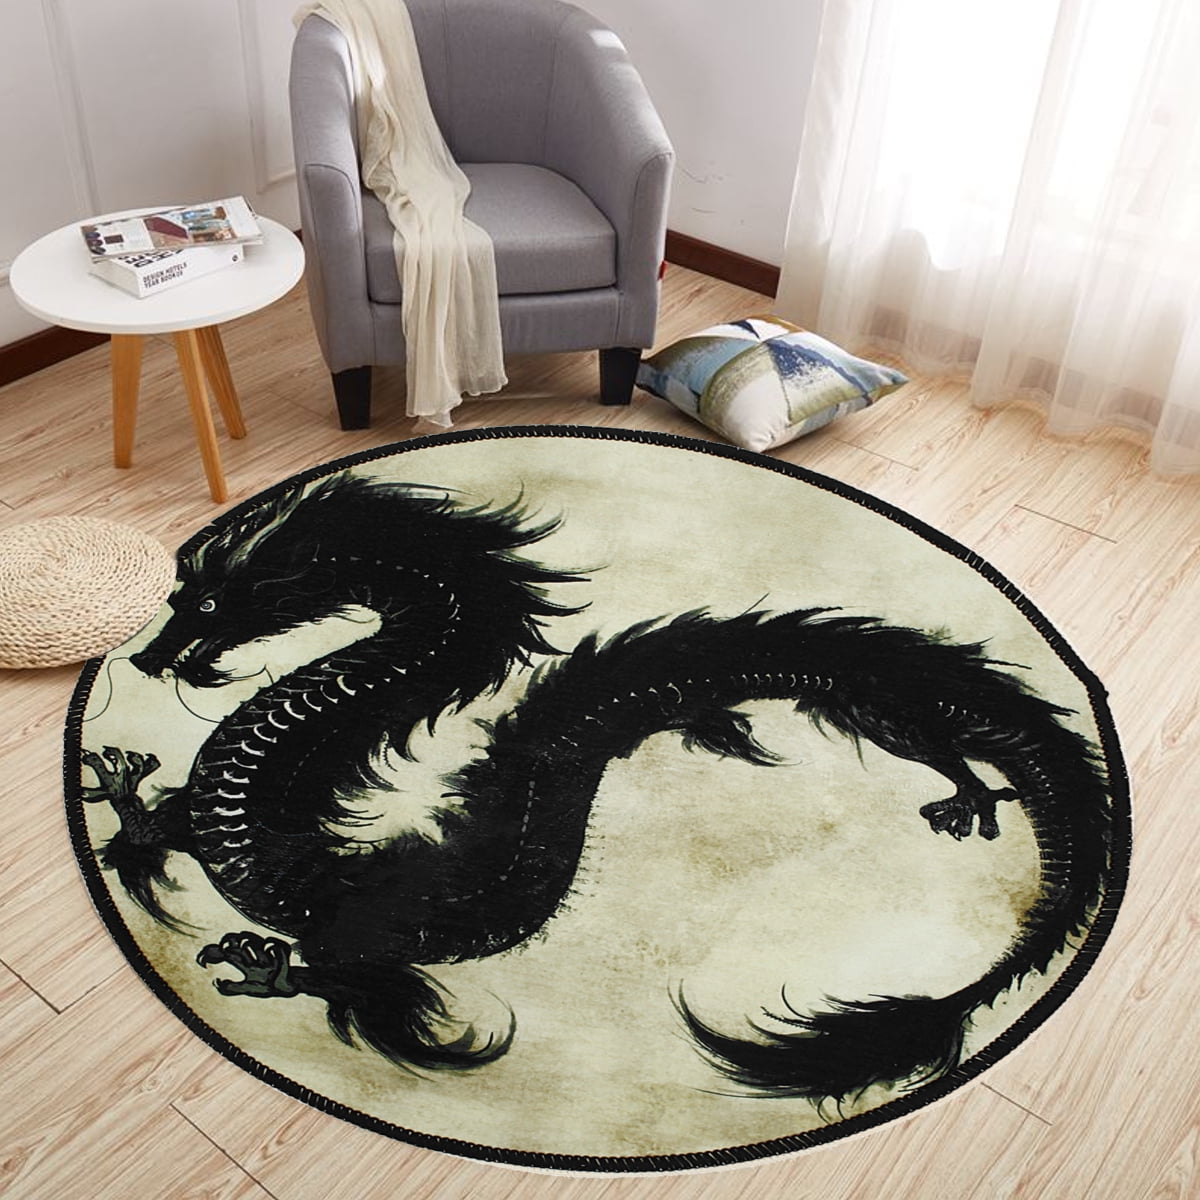 Oriental Black Dragon Non-slip Yoga Mat Room Floor Round Carpet Decor Area Rugs 